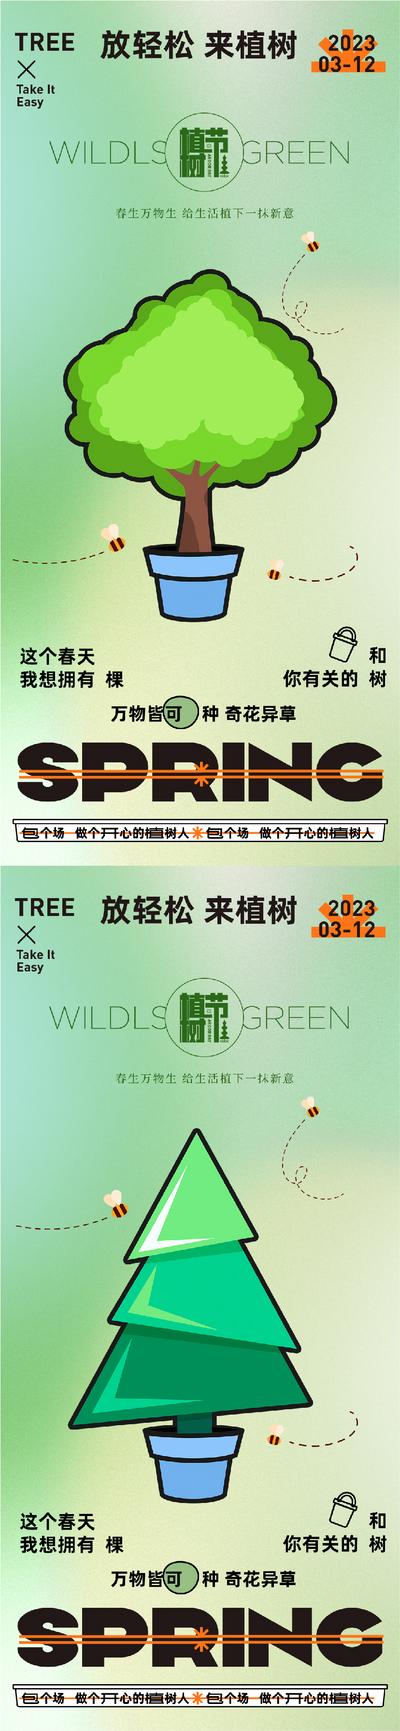 【南门网】海报 公历节日 植树节 文化 环保 天然 保护地球 世界地球日  